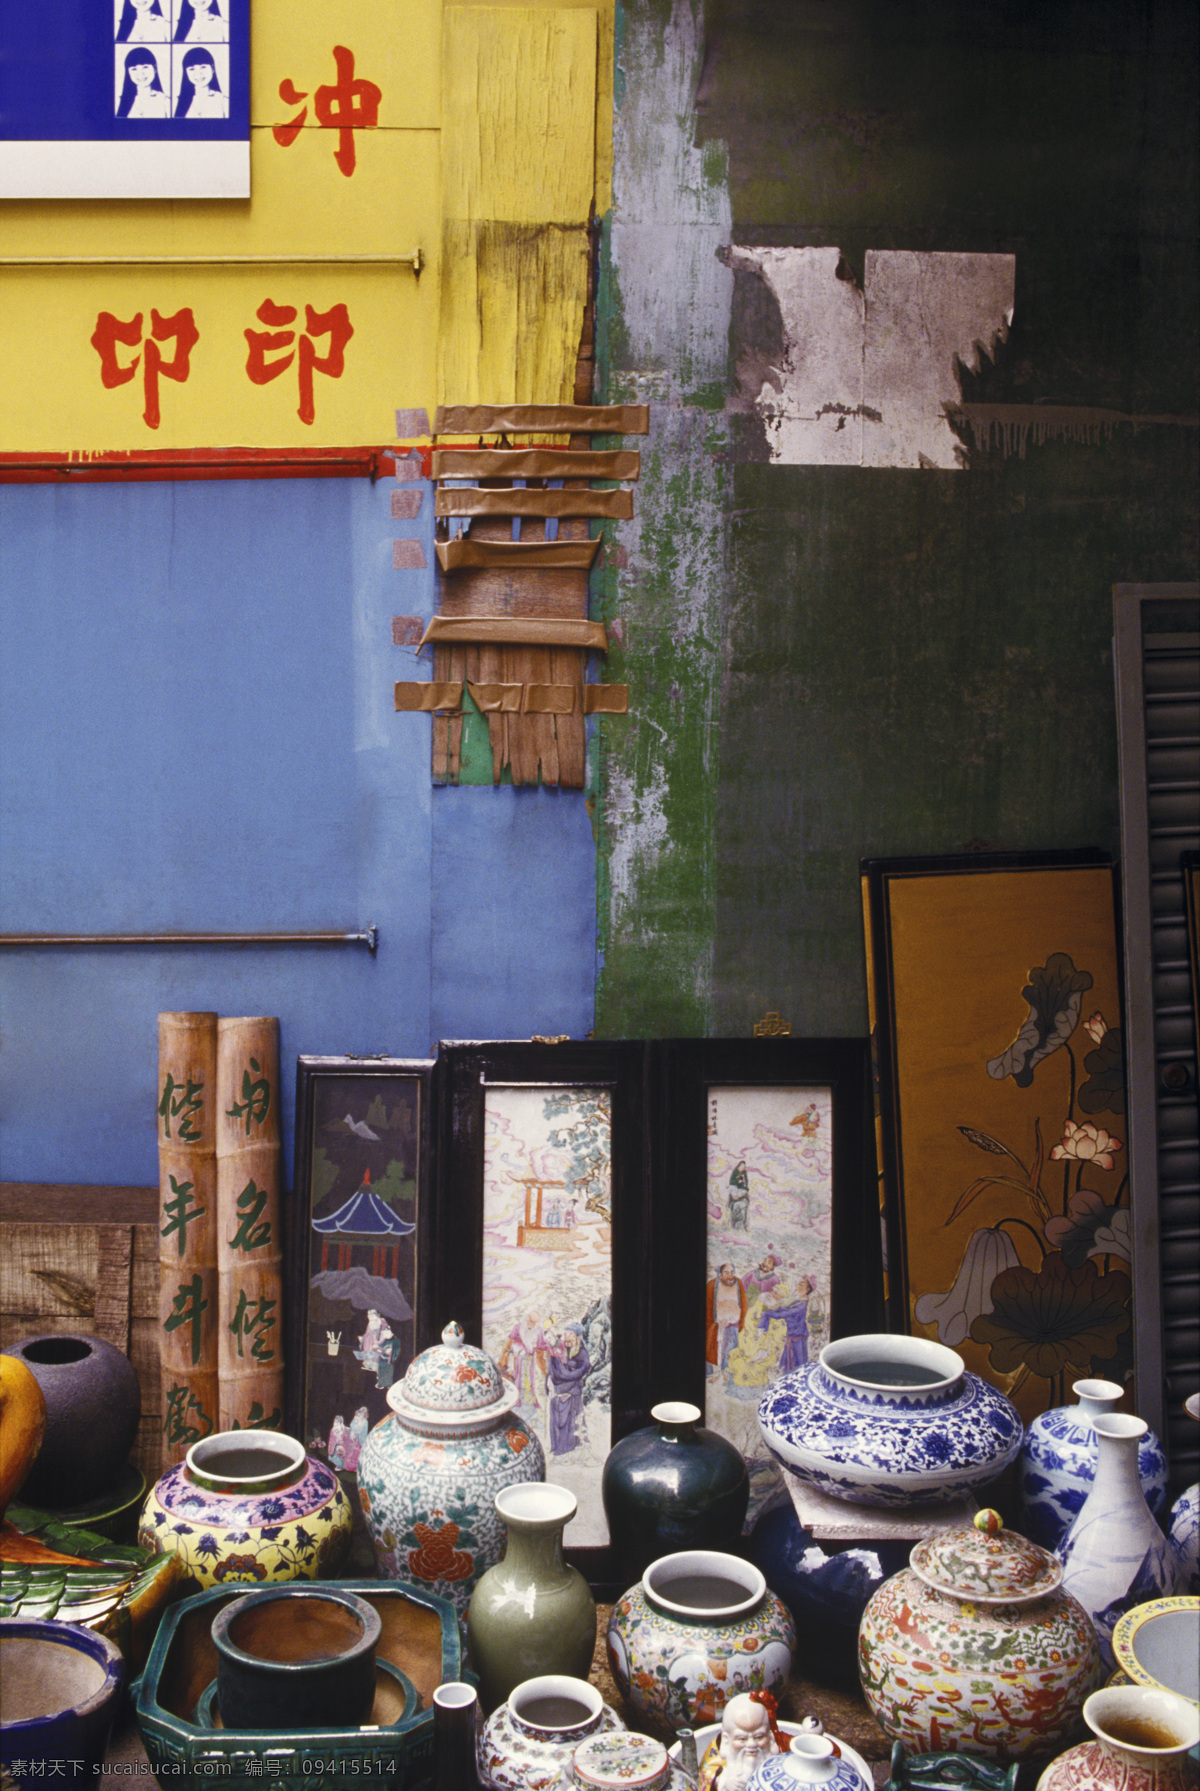 香港 古玩店 城市风光 古董 瓷器 罐子 花瓶 图画 书法 摄影图 高清图片 环境家居